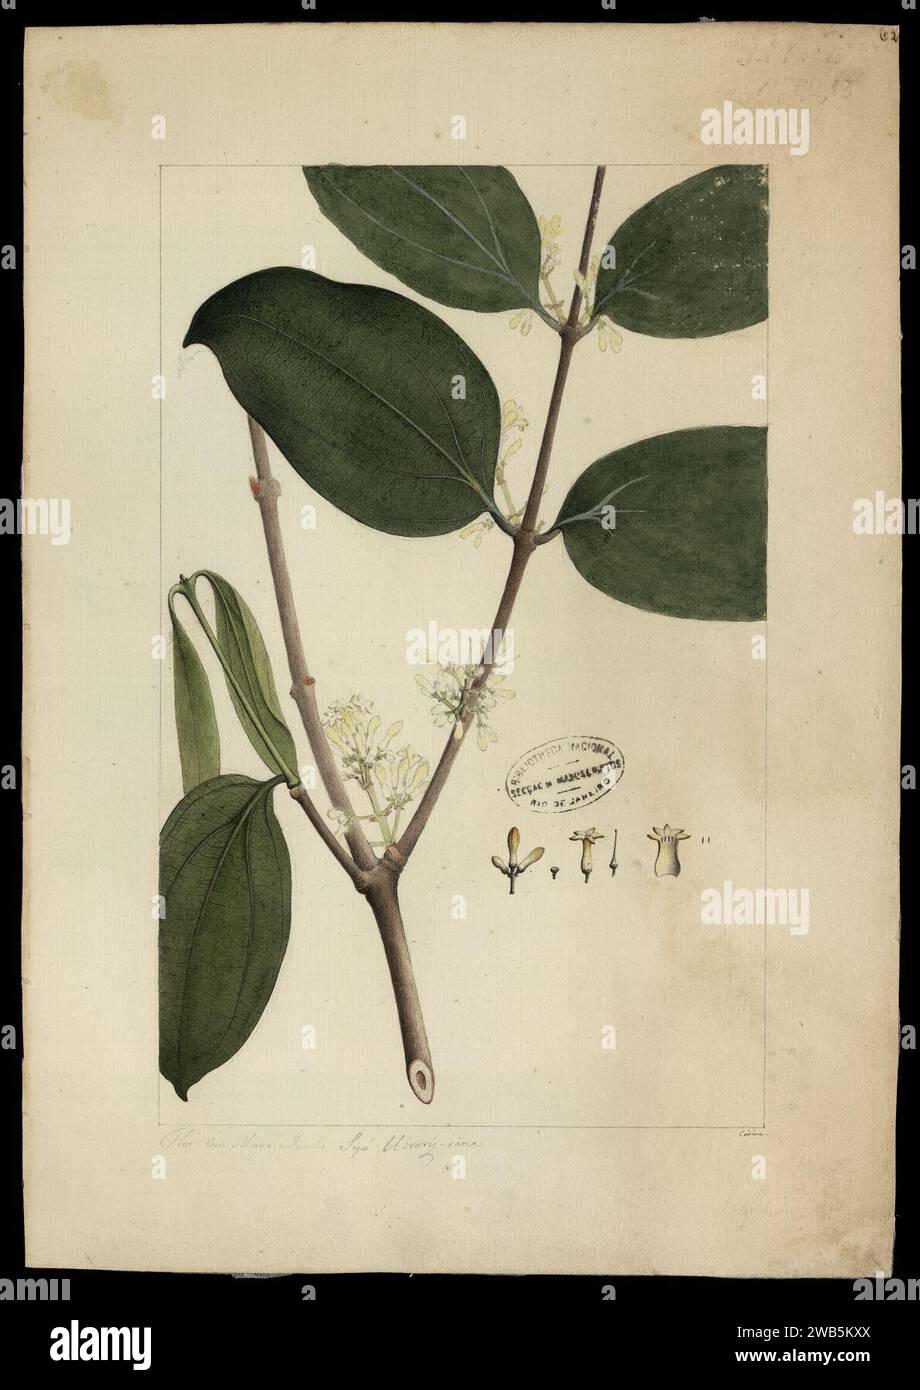 (Strychnos smilacina, Benth), Stock Photo